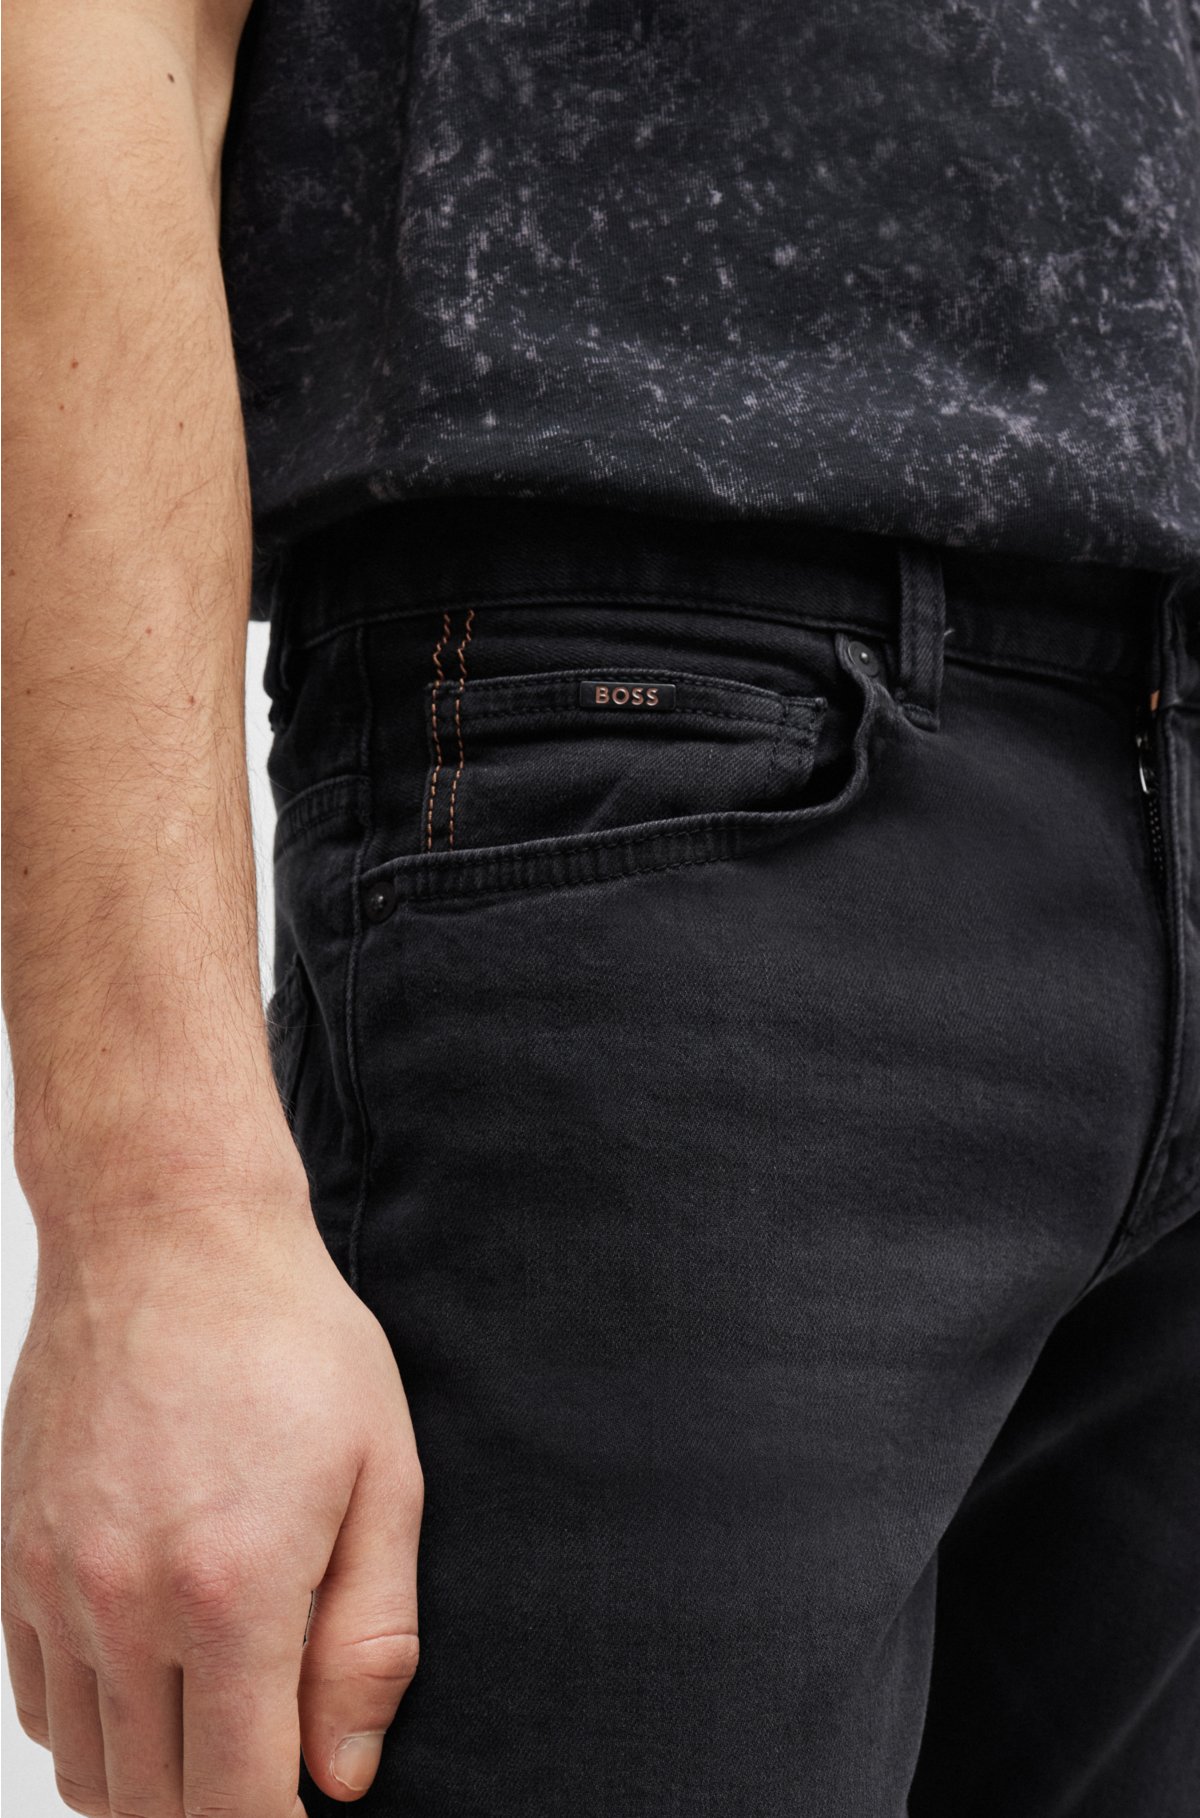 Slim-fit jeans in black super-stretch denim, Black